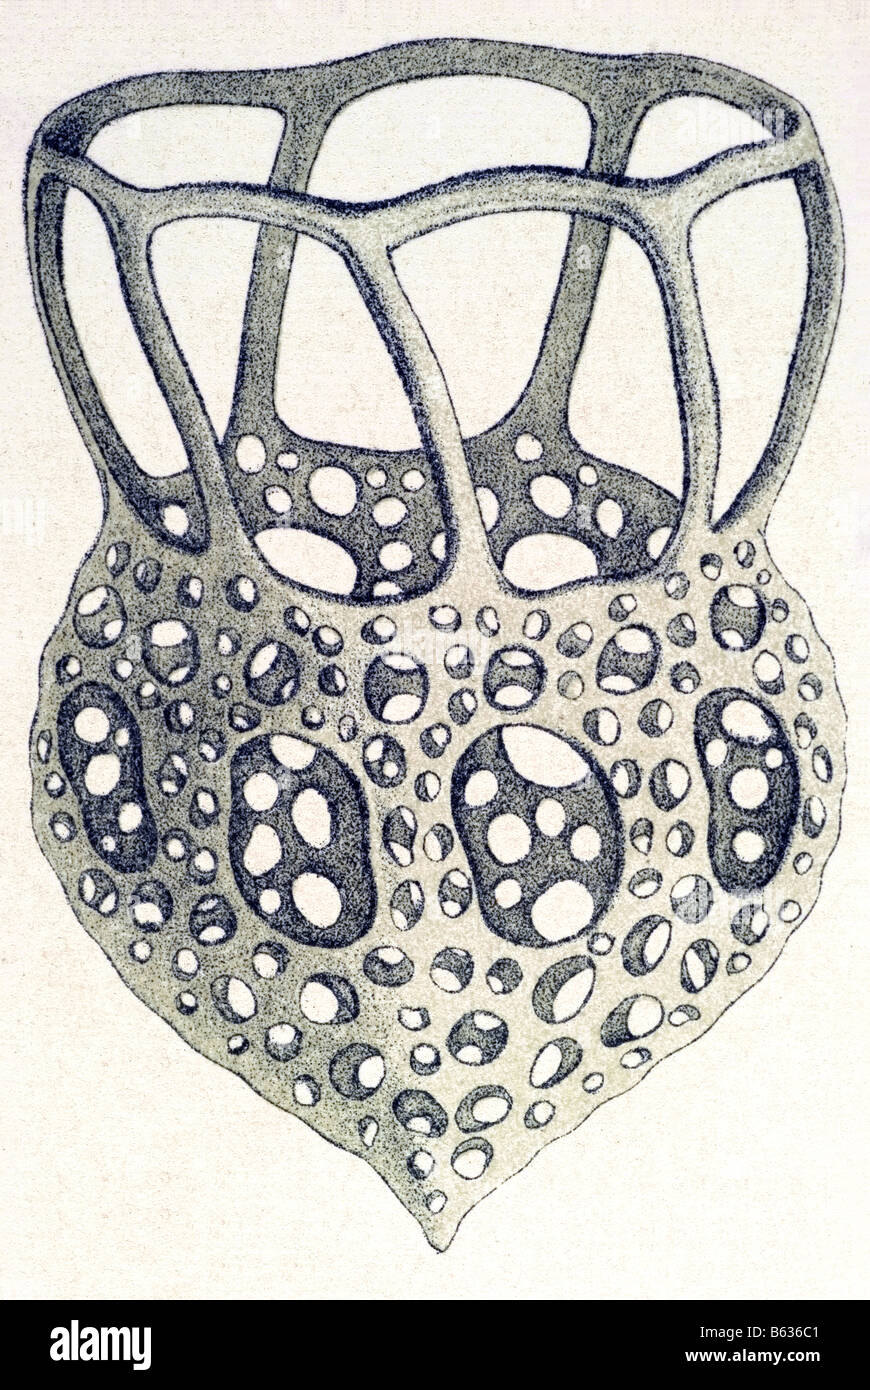 / Wimperlinge ciliata, nombre Stentor, Haeckel, Kunstformen der Natur, art nouveau, del siglo XX, Europa Foto de stock